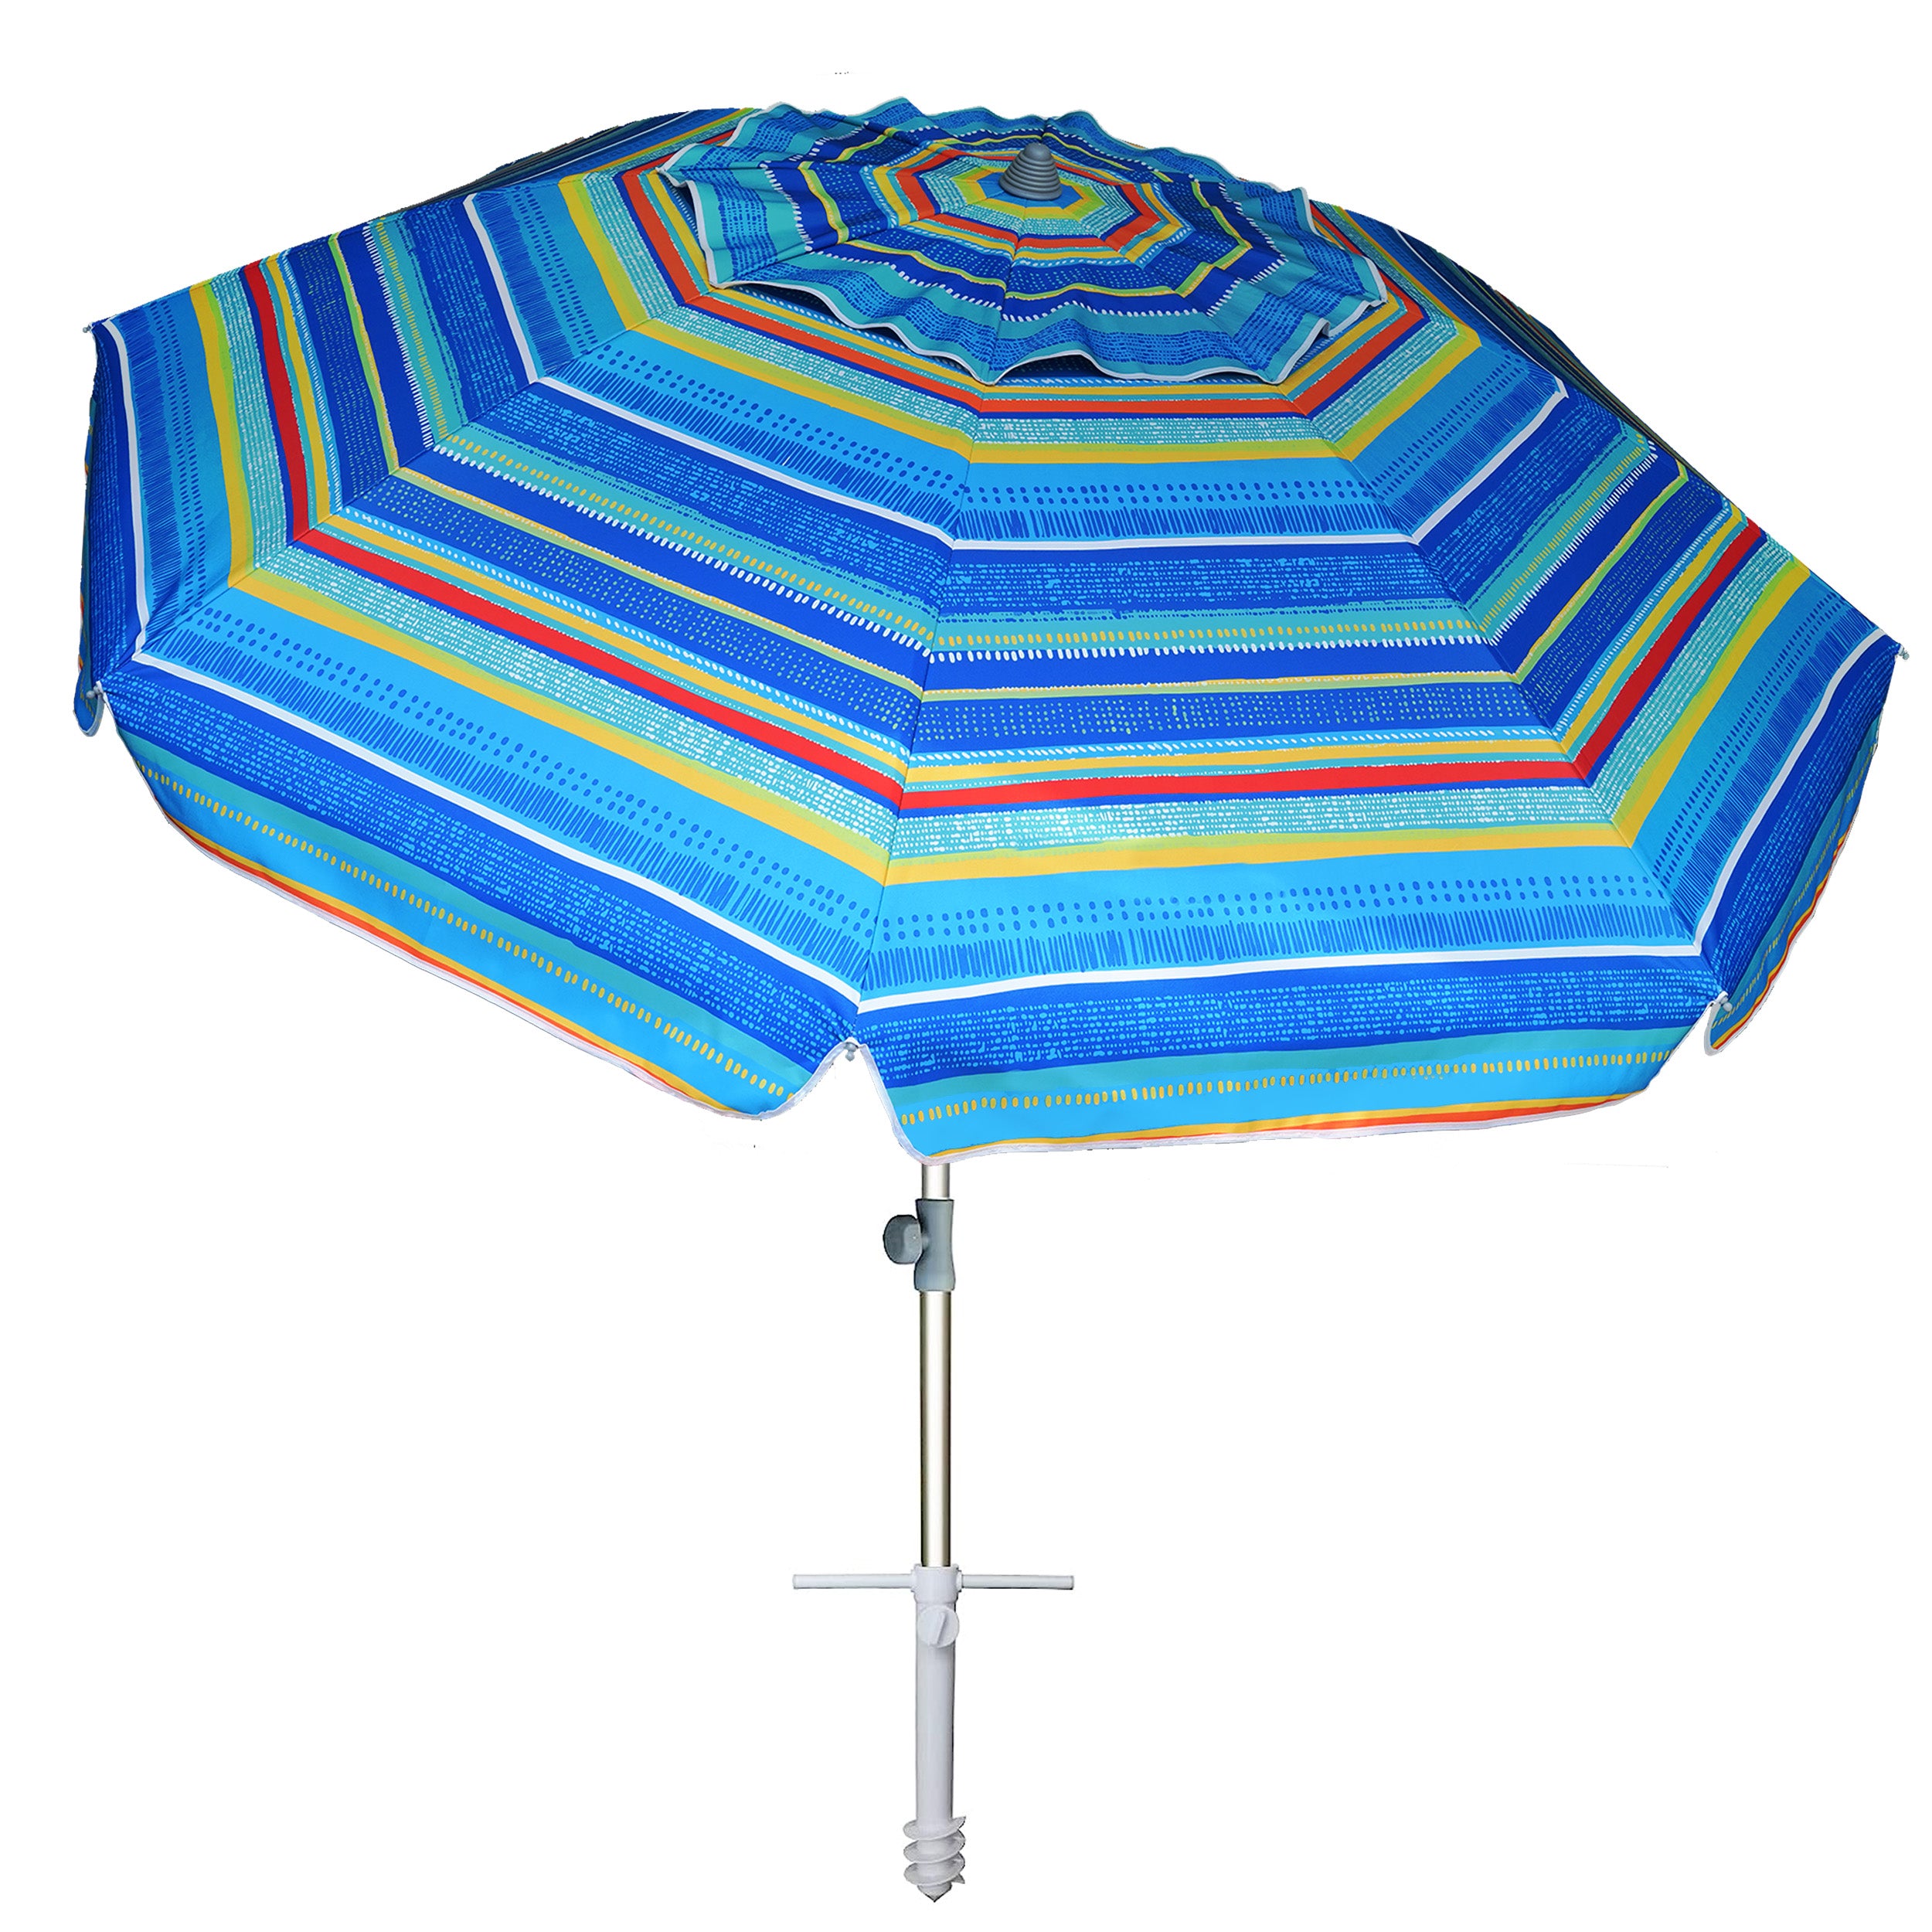 AMMSUN 7ft Heavy Duty High Wind Beach Umbrella With Sand Anchor